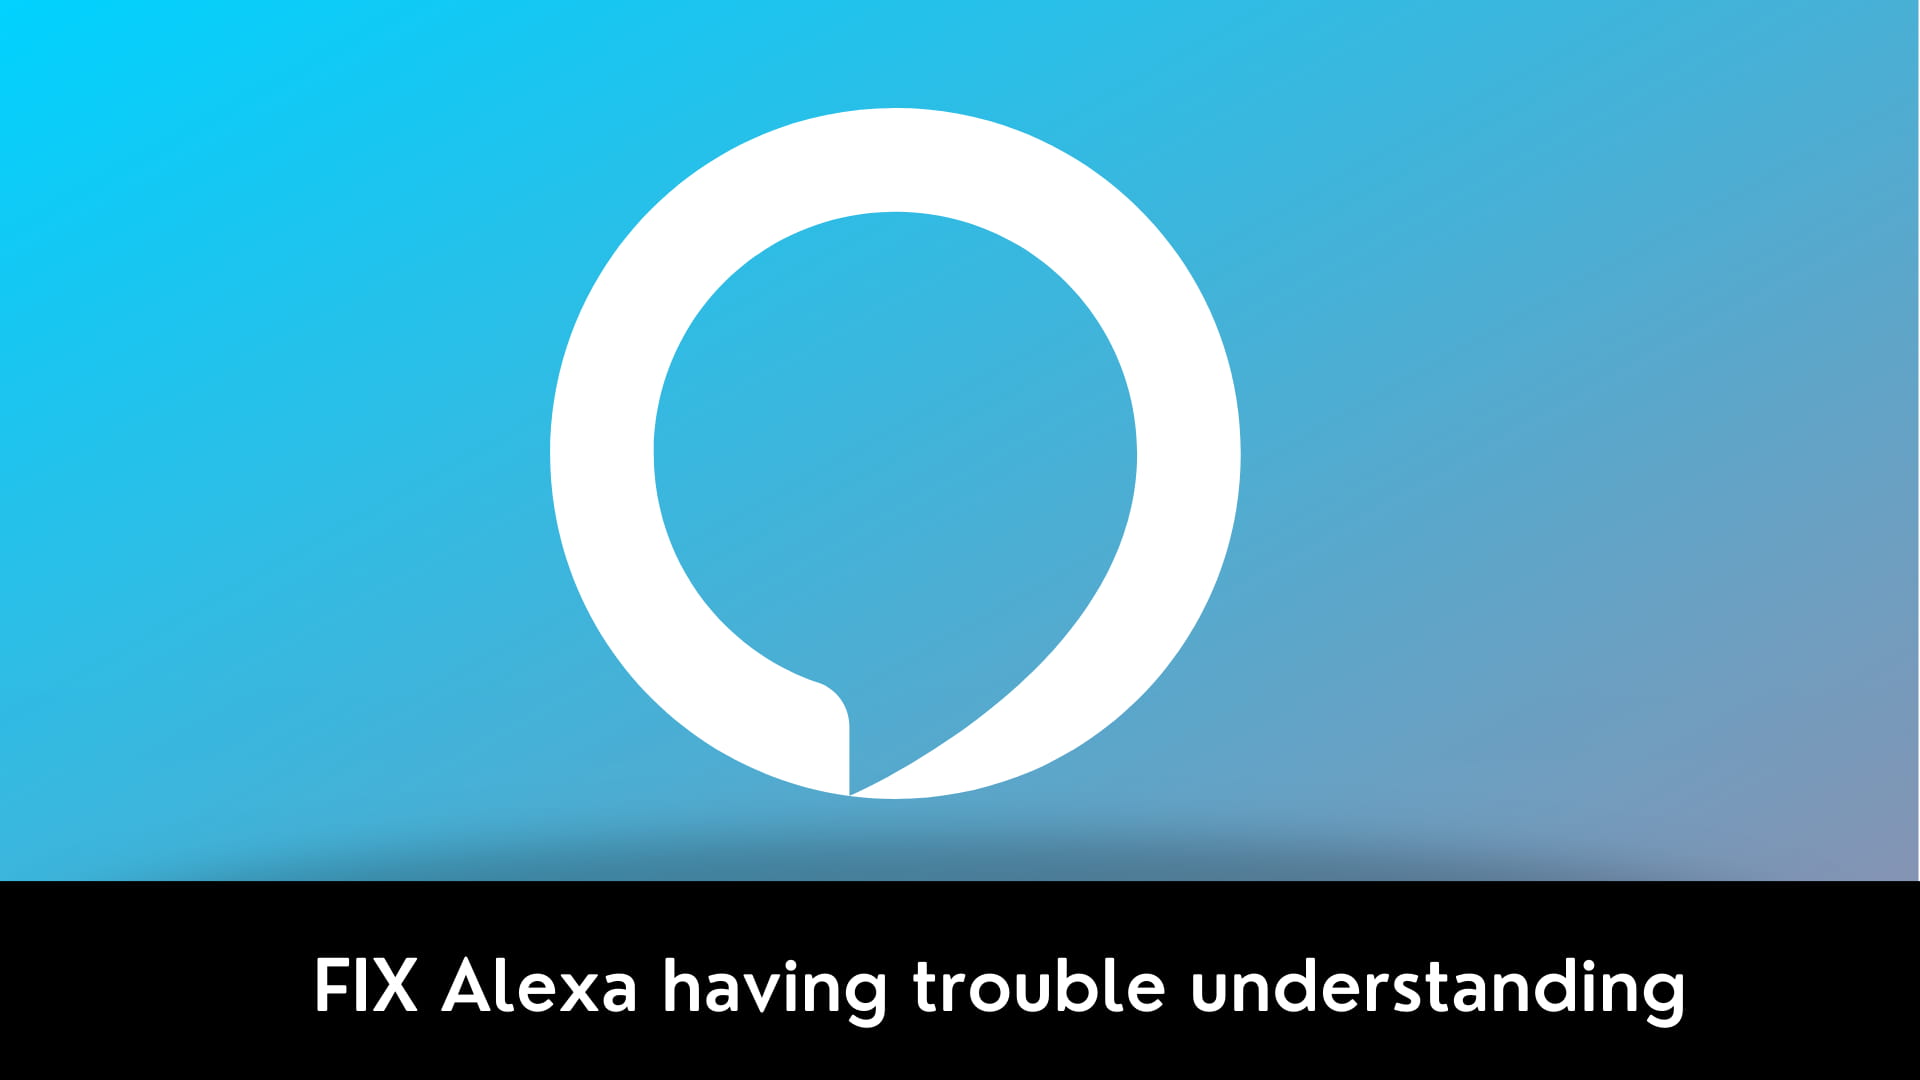 FIX Alexa having trouble understanding